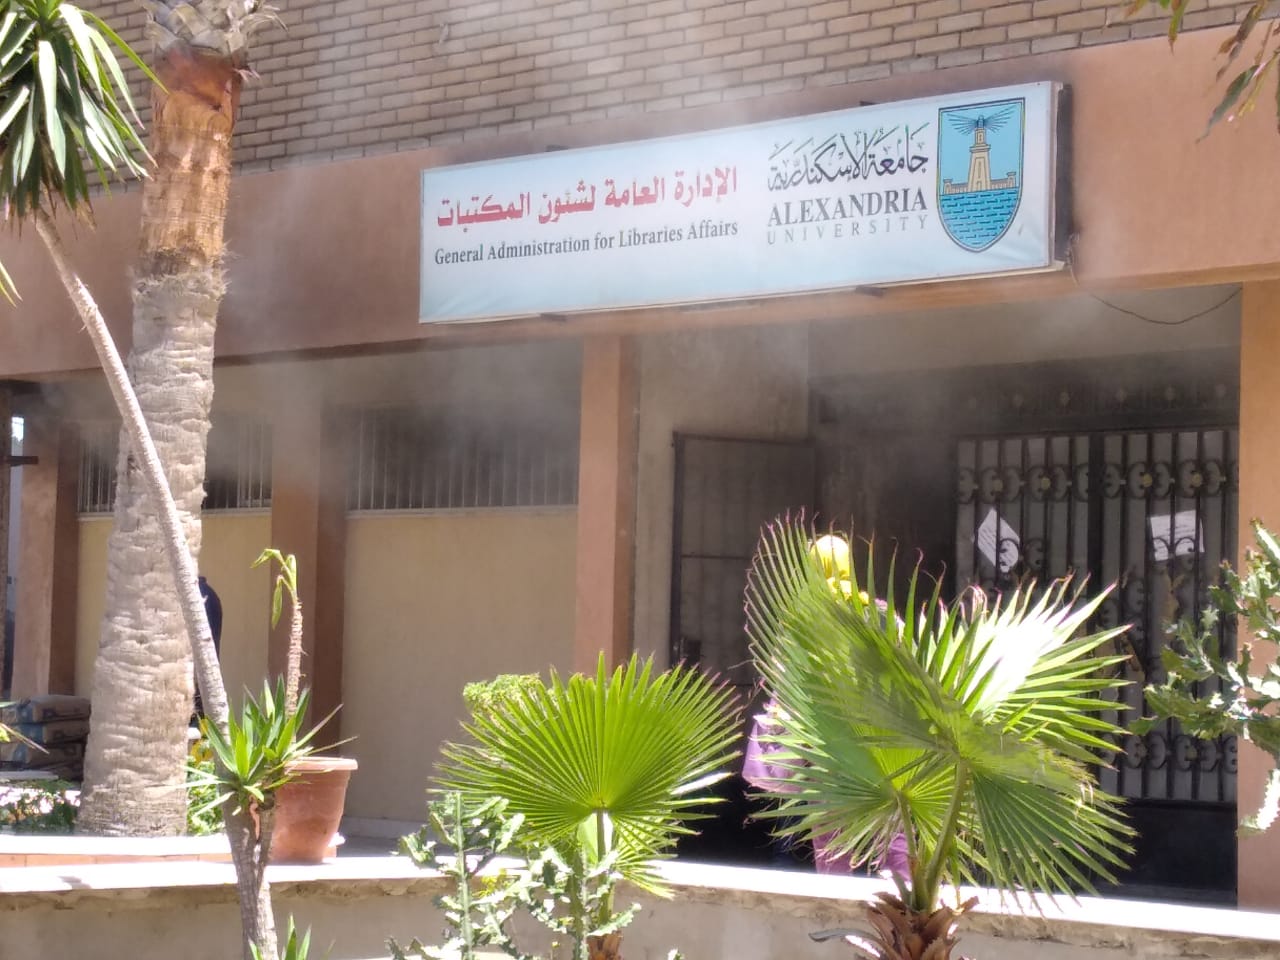   حريق محدود بالمكتبة المركزية بجامعة الإسكندرية